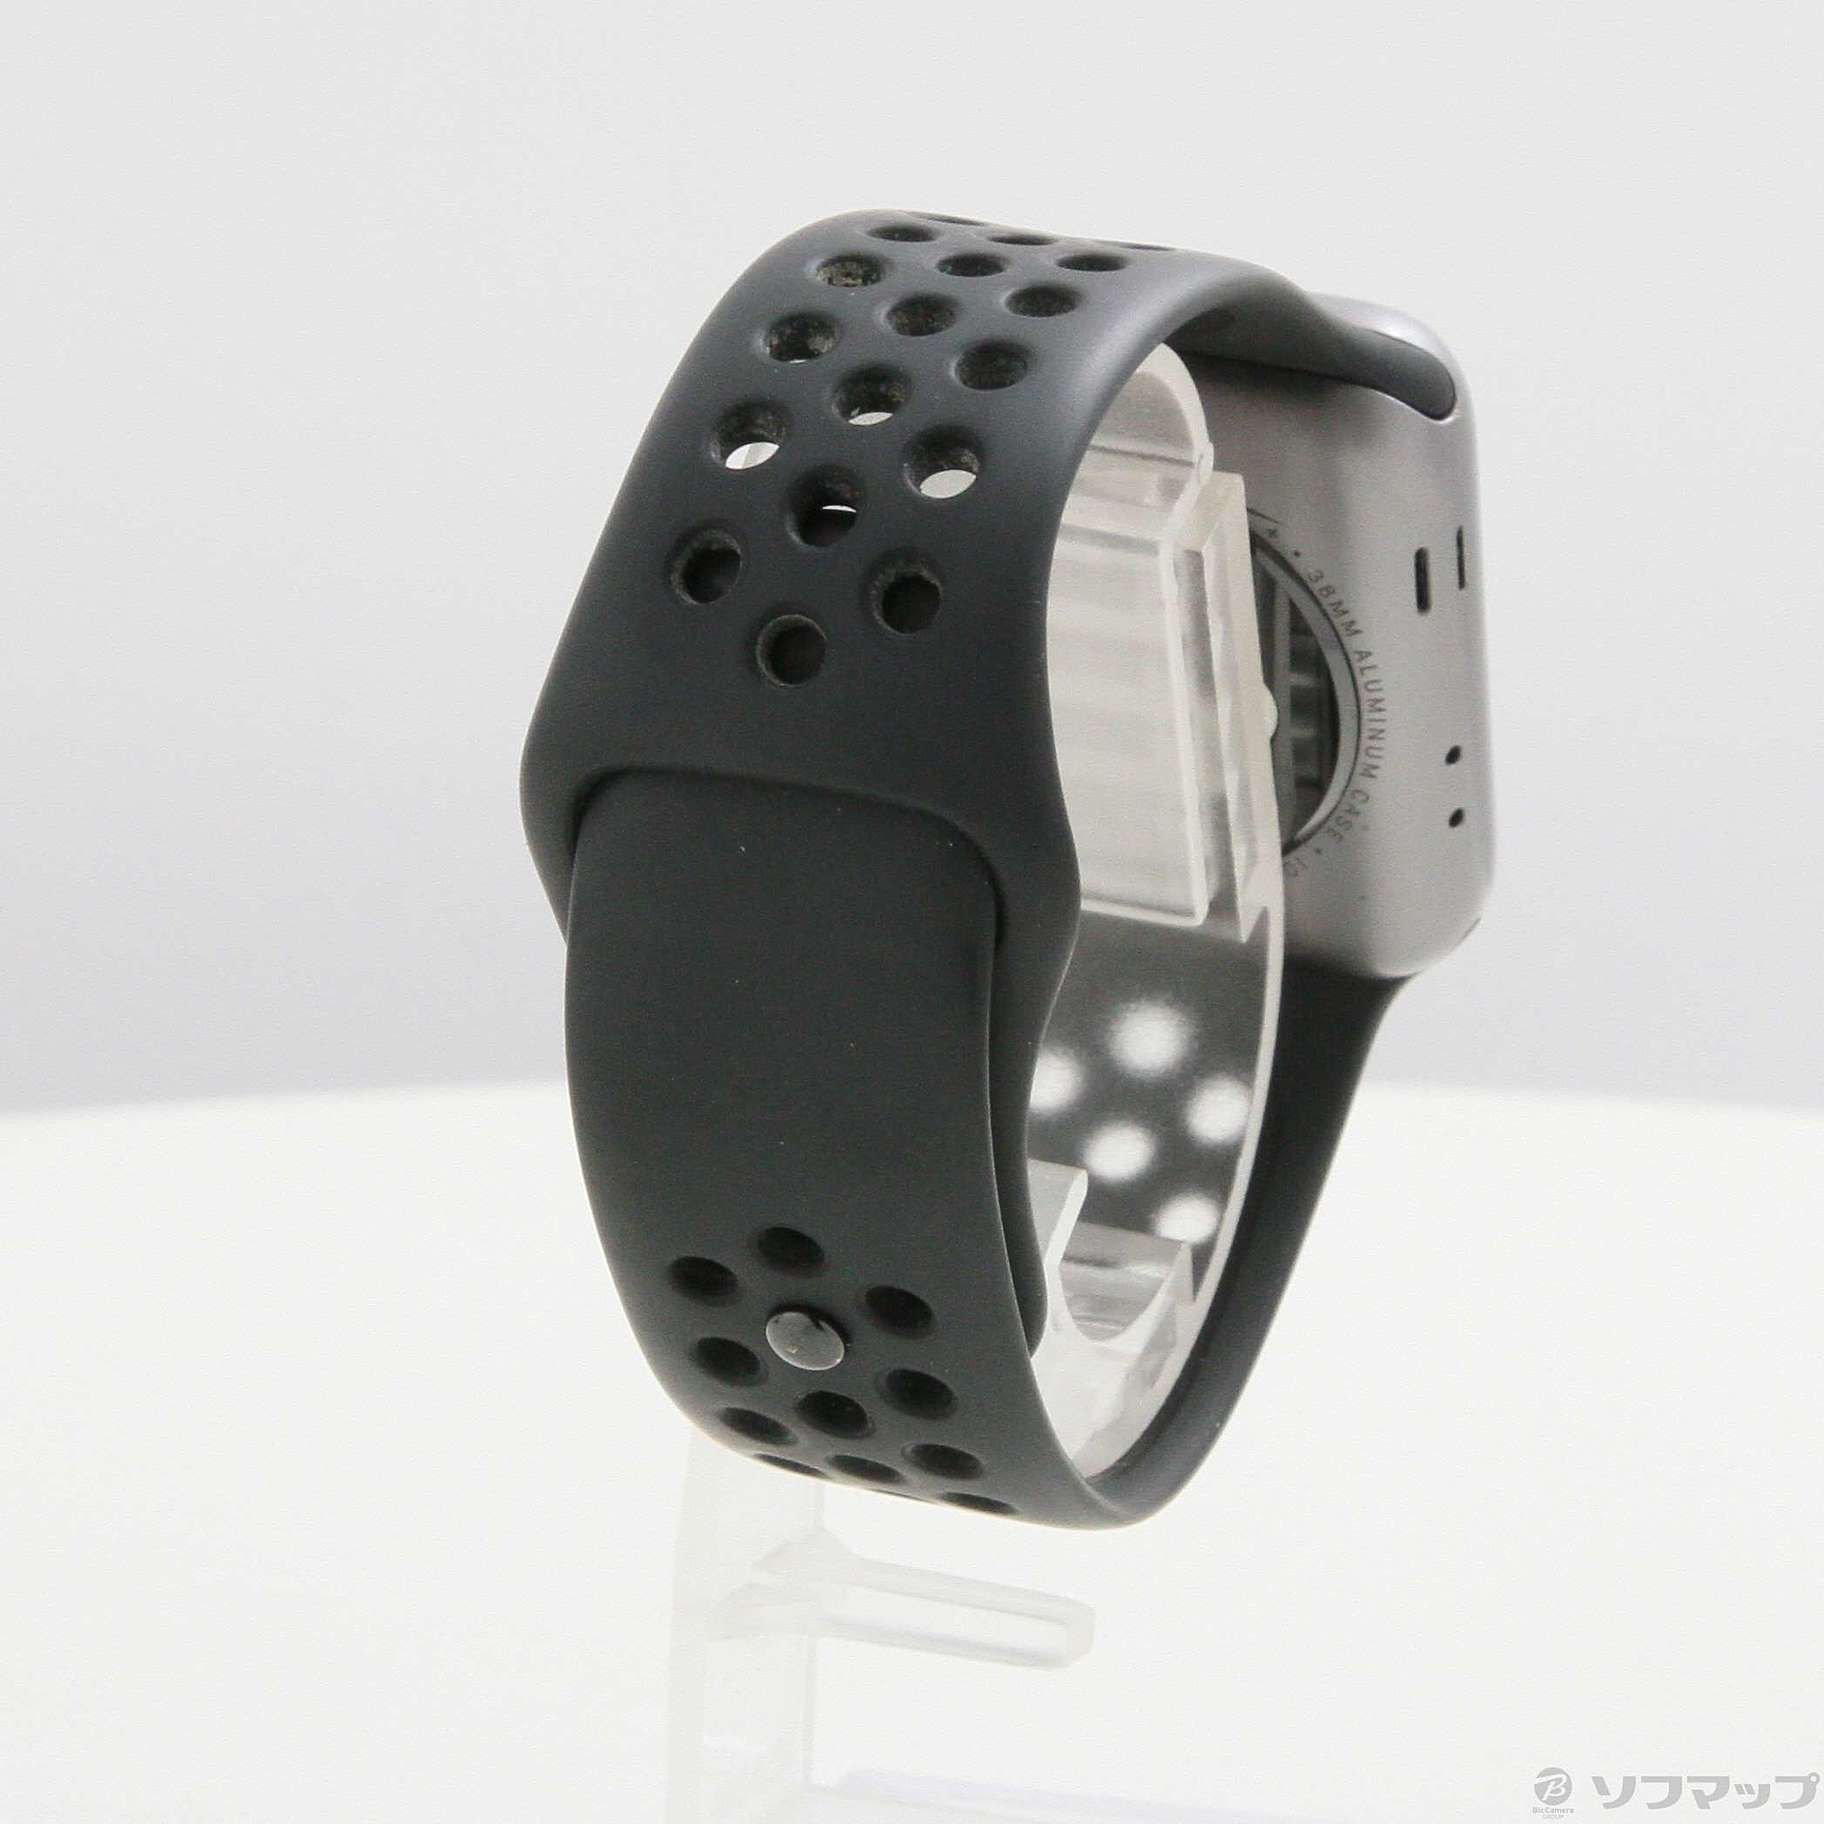 Apple Watch Series 2 Nike+ 38mm スペースグレイアルミニウムケース アンスラサイト／ブラックNikeスポーツバンド